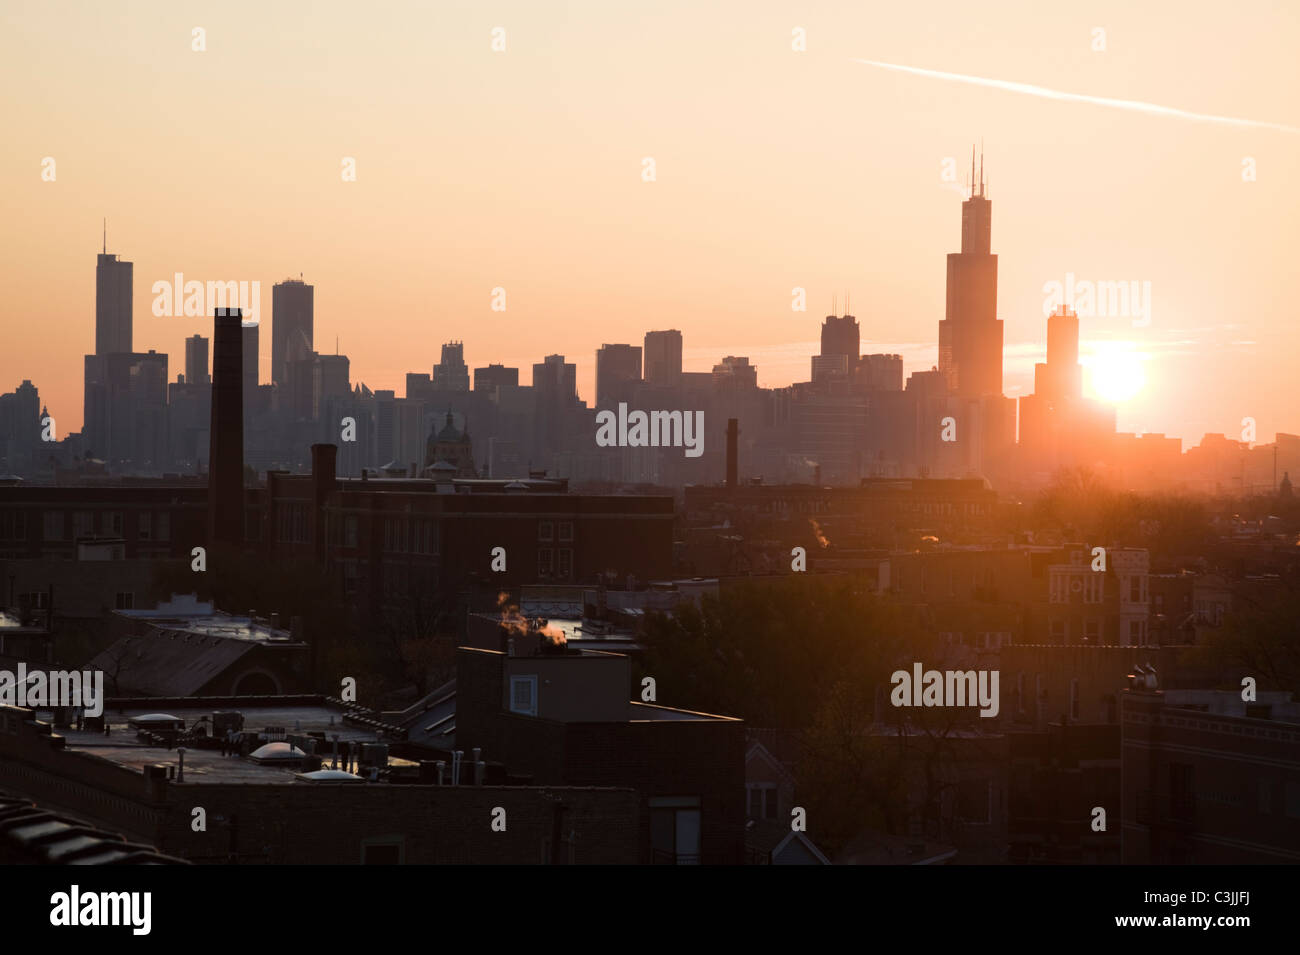 USA, Illinois, Chicago skyline at sunrise Stock Photo